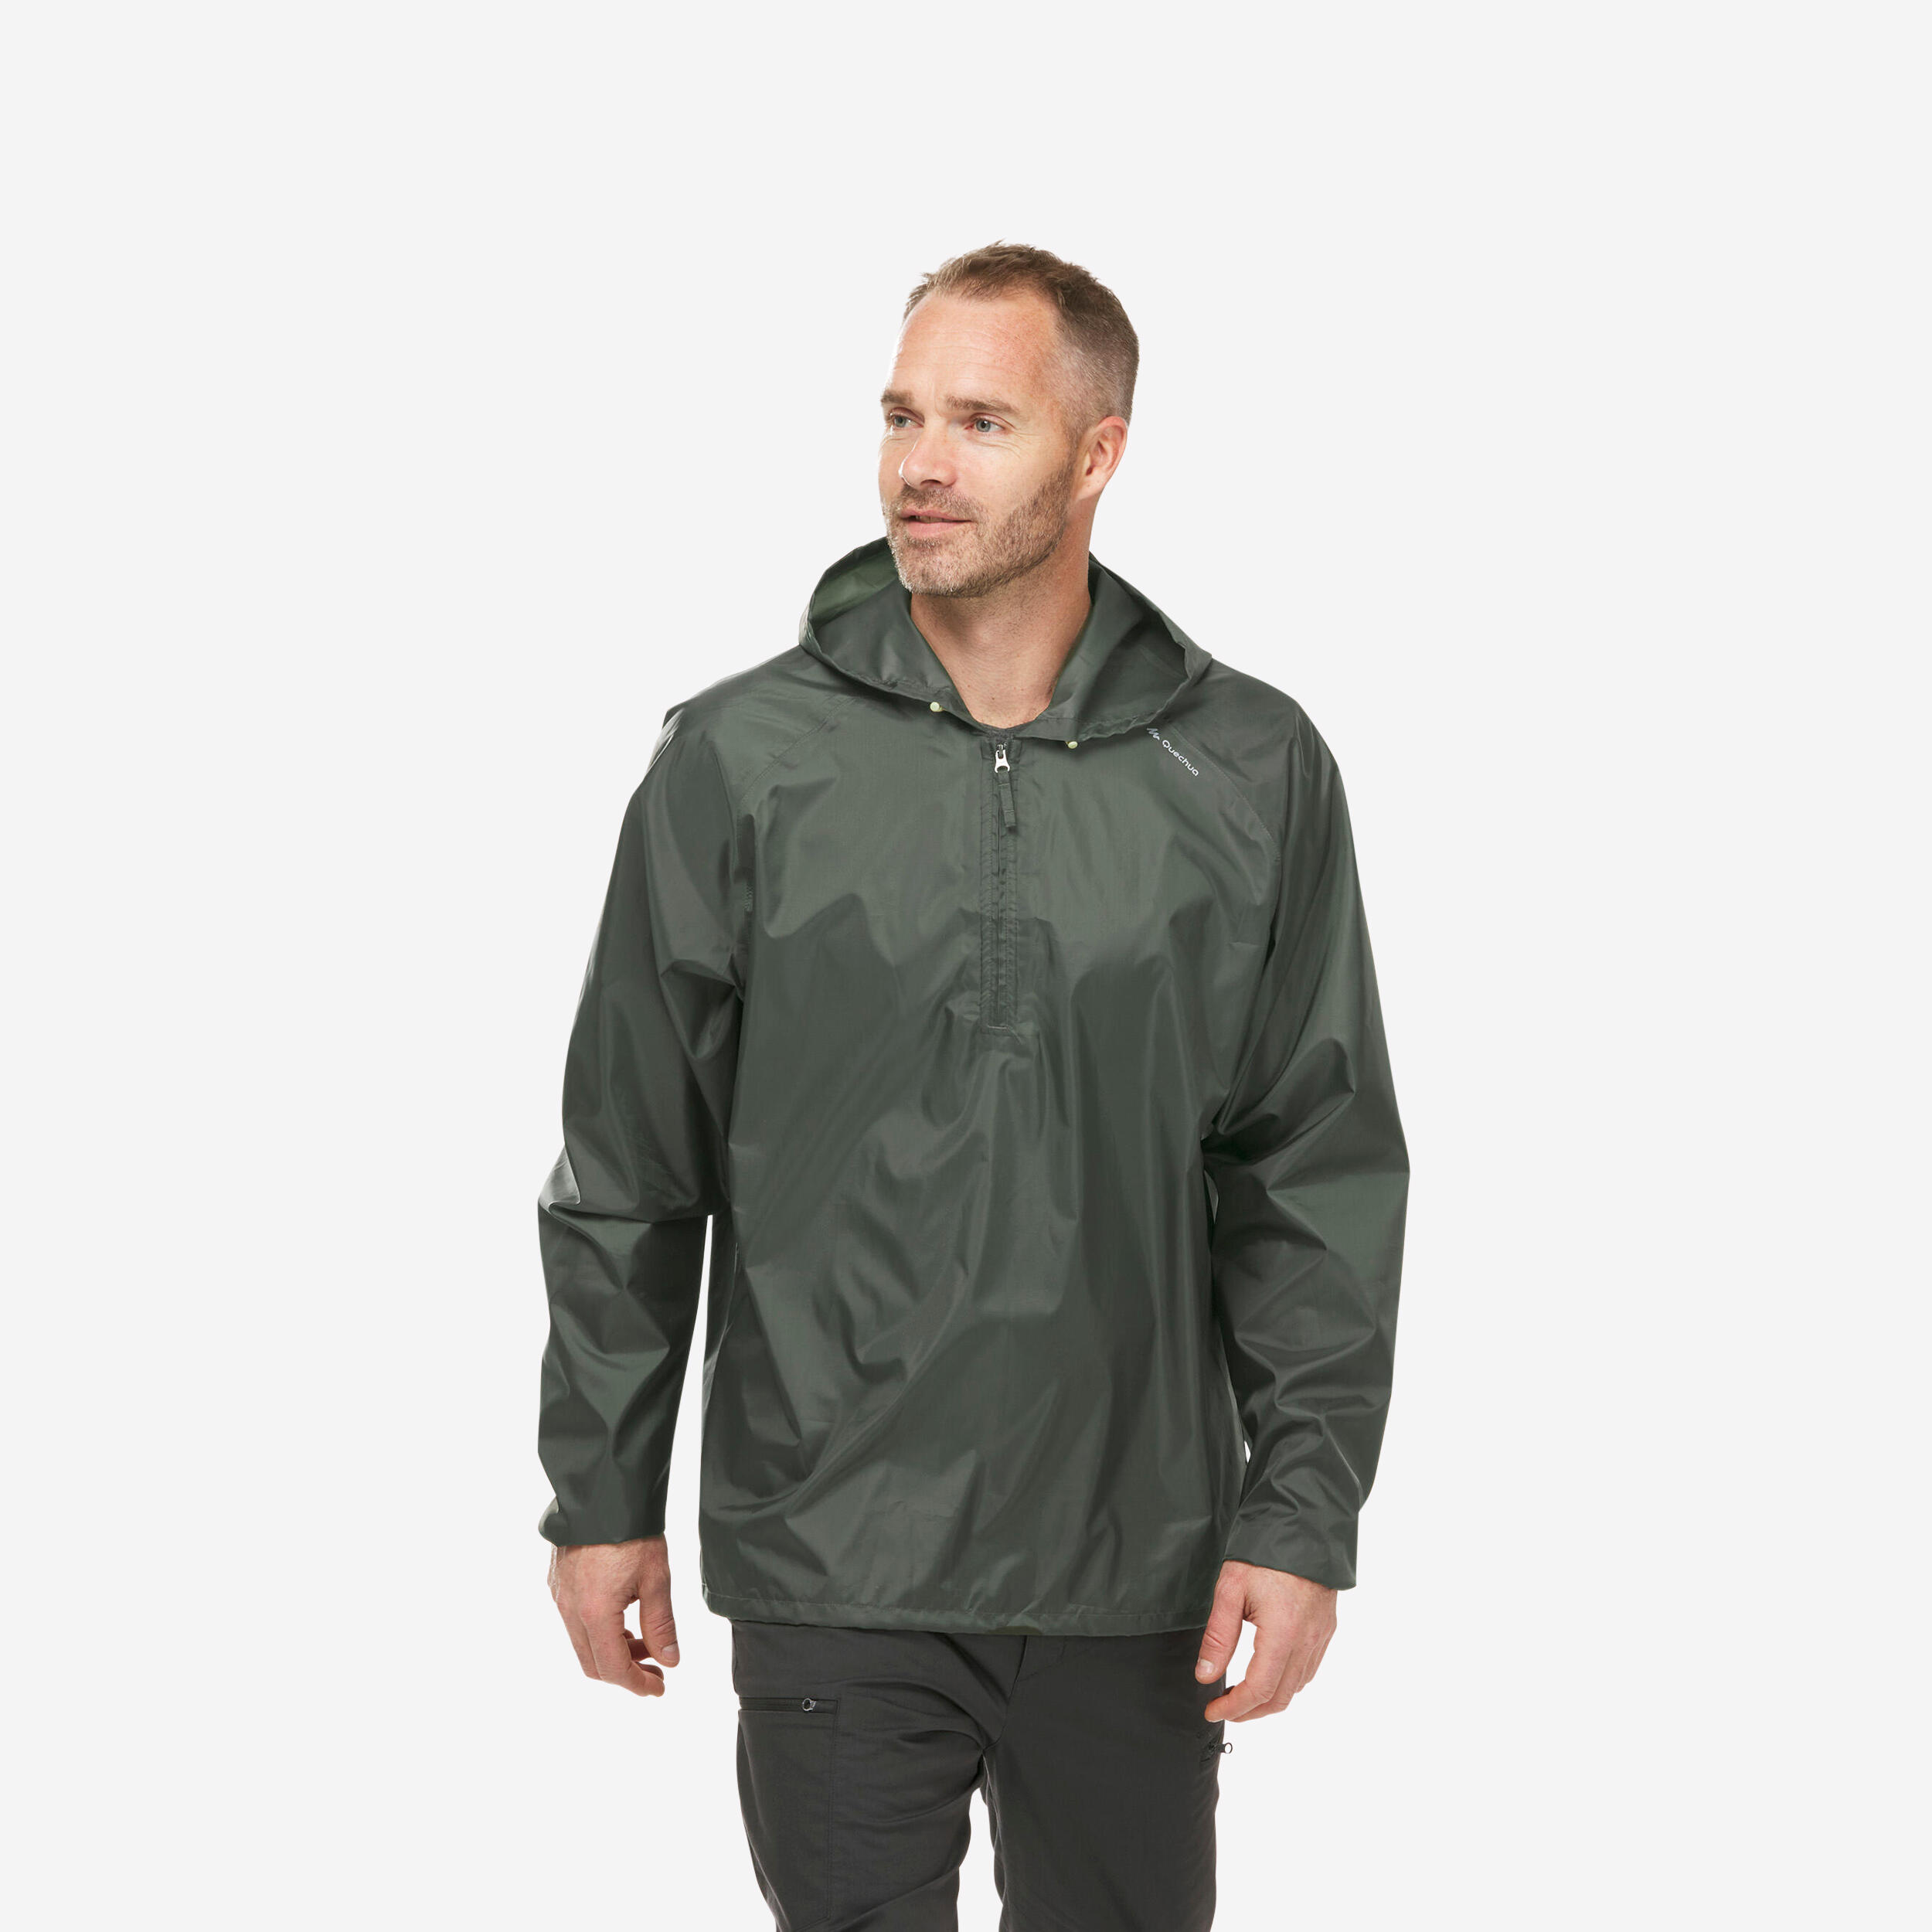 Men's Windproof and Water-repellent Hiking Jacket - Raincut 1/2 Zip 1/9